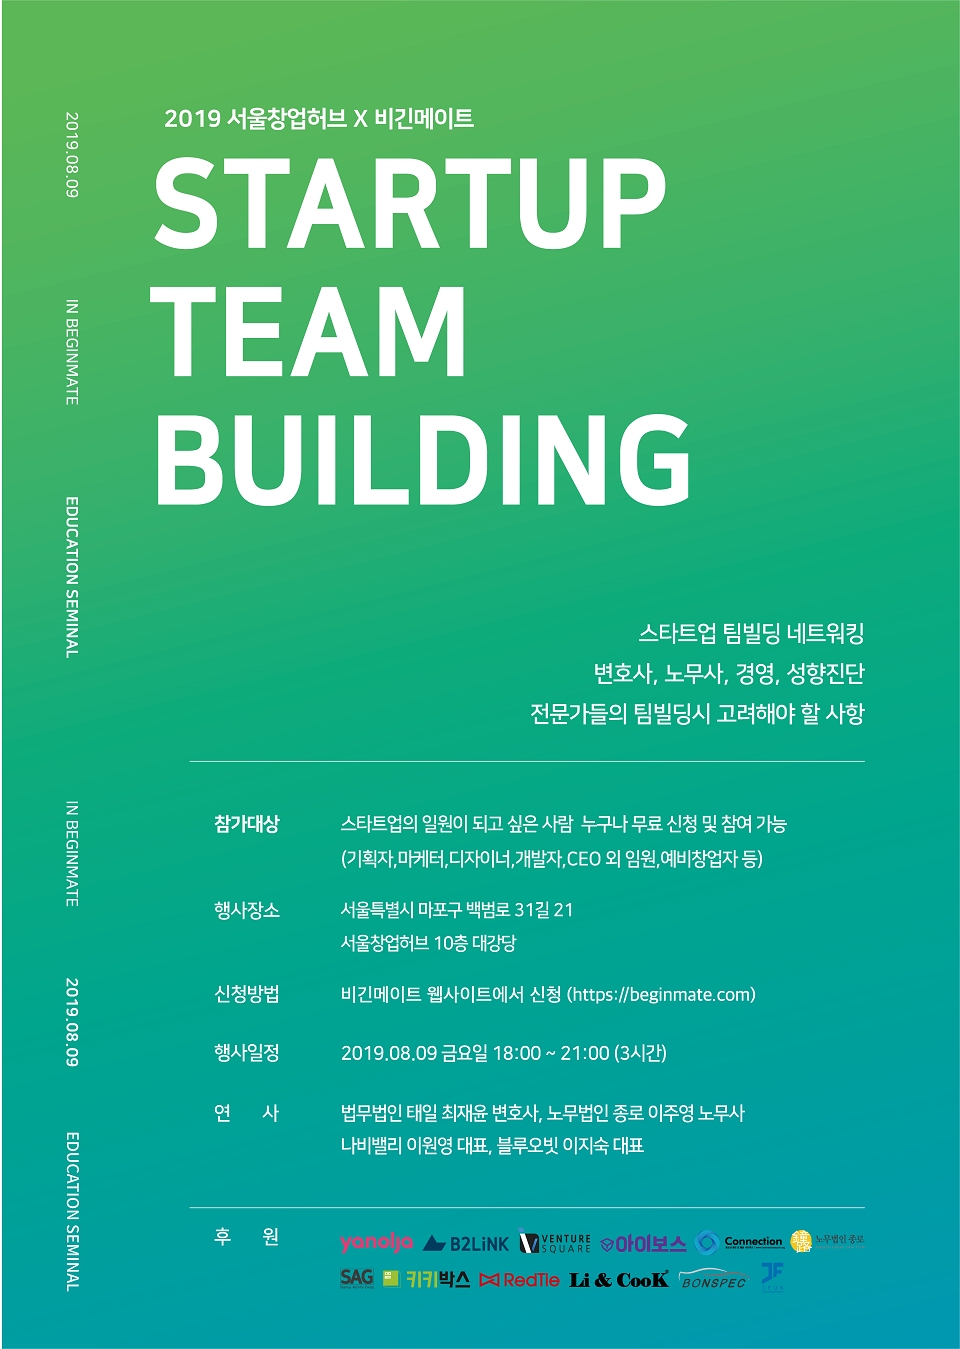 '서울창업허브X비긴메이트 STARTUP TEAMBUILDING(스타트업 팀빌딩 네트워킹) 행사' 포스터. (출처: 비긴메이트)